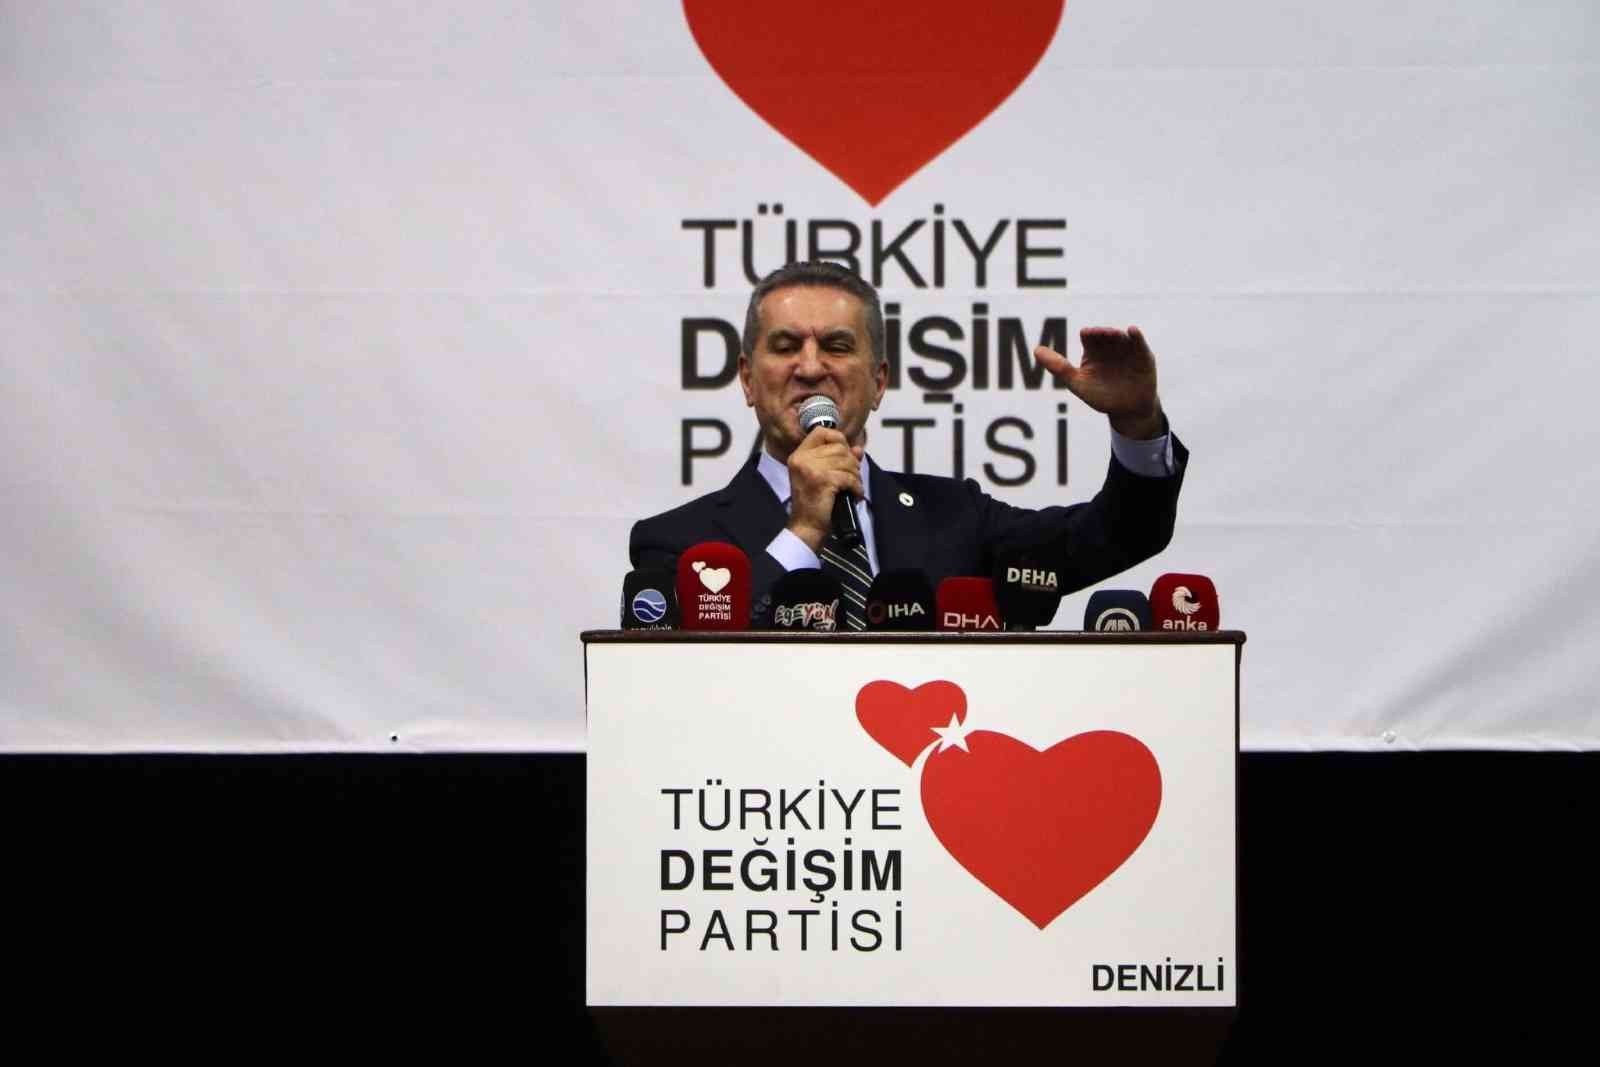 Sarıgül: “Türkiye’nin kurtuluşu ekonomik milliyetçilik” #denizli